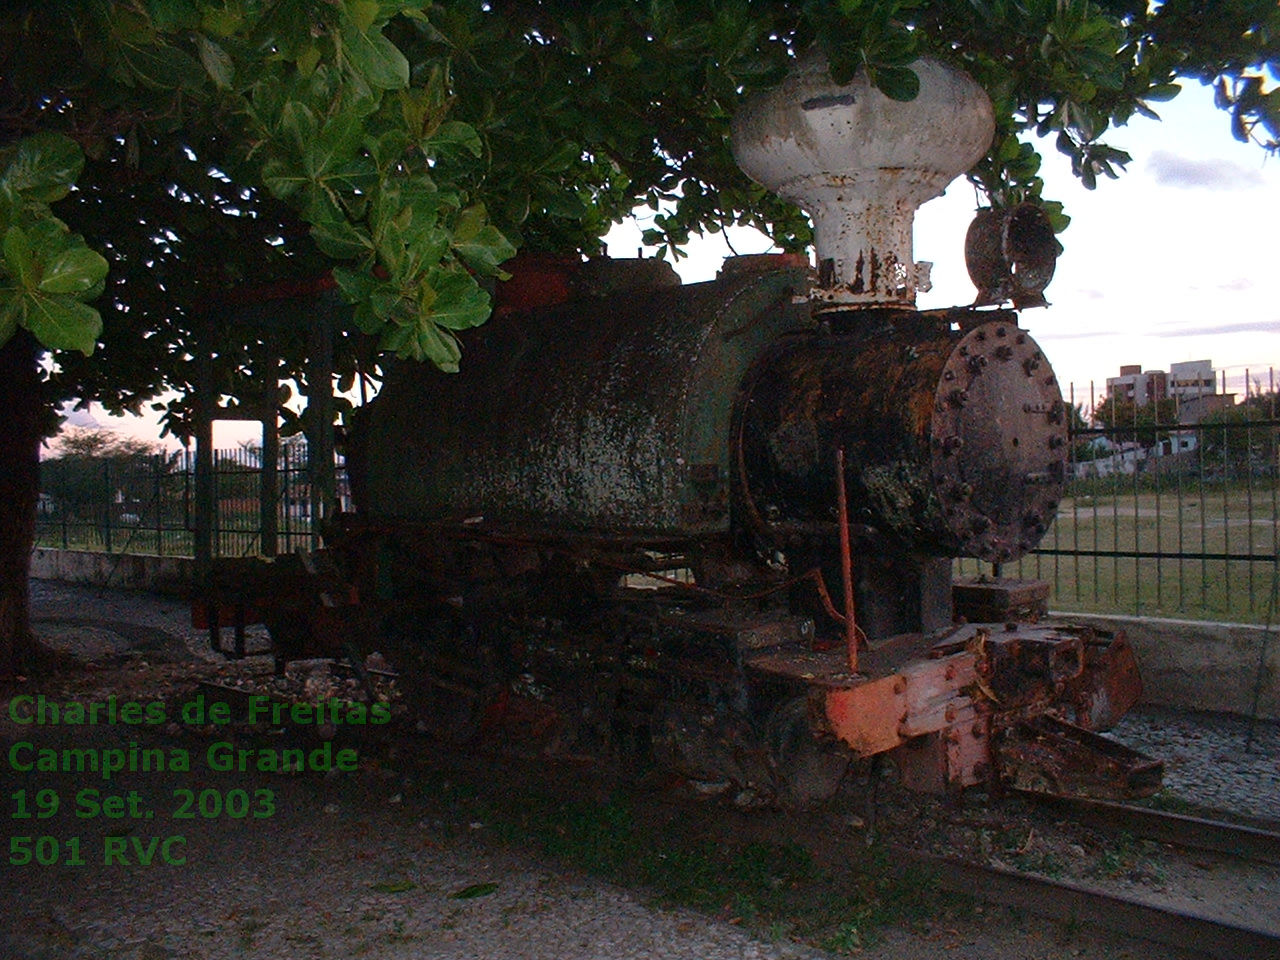 Locomotiva a vapor ex-nº 501 RVC no Museu do Algodão, em Campina Grande, 19 Set. 2003 